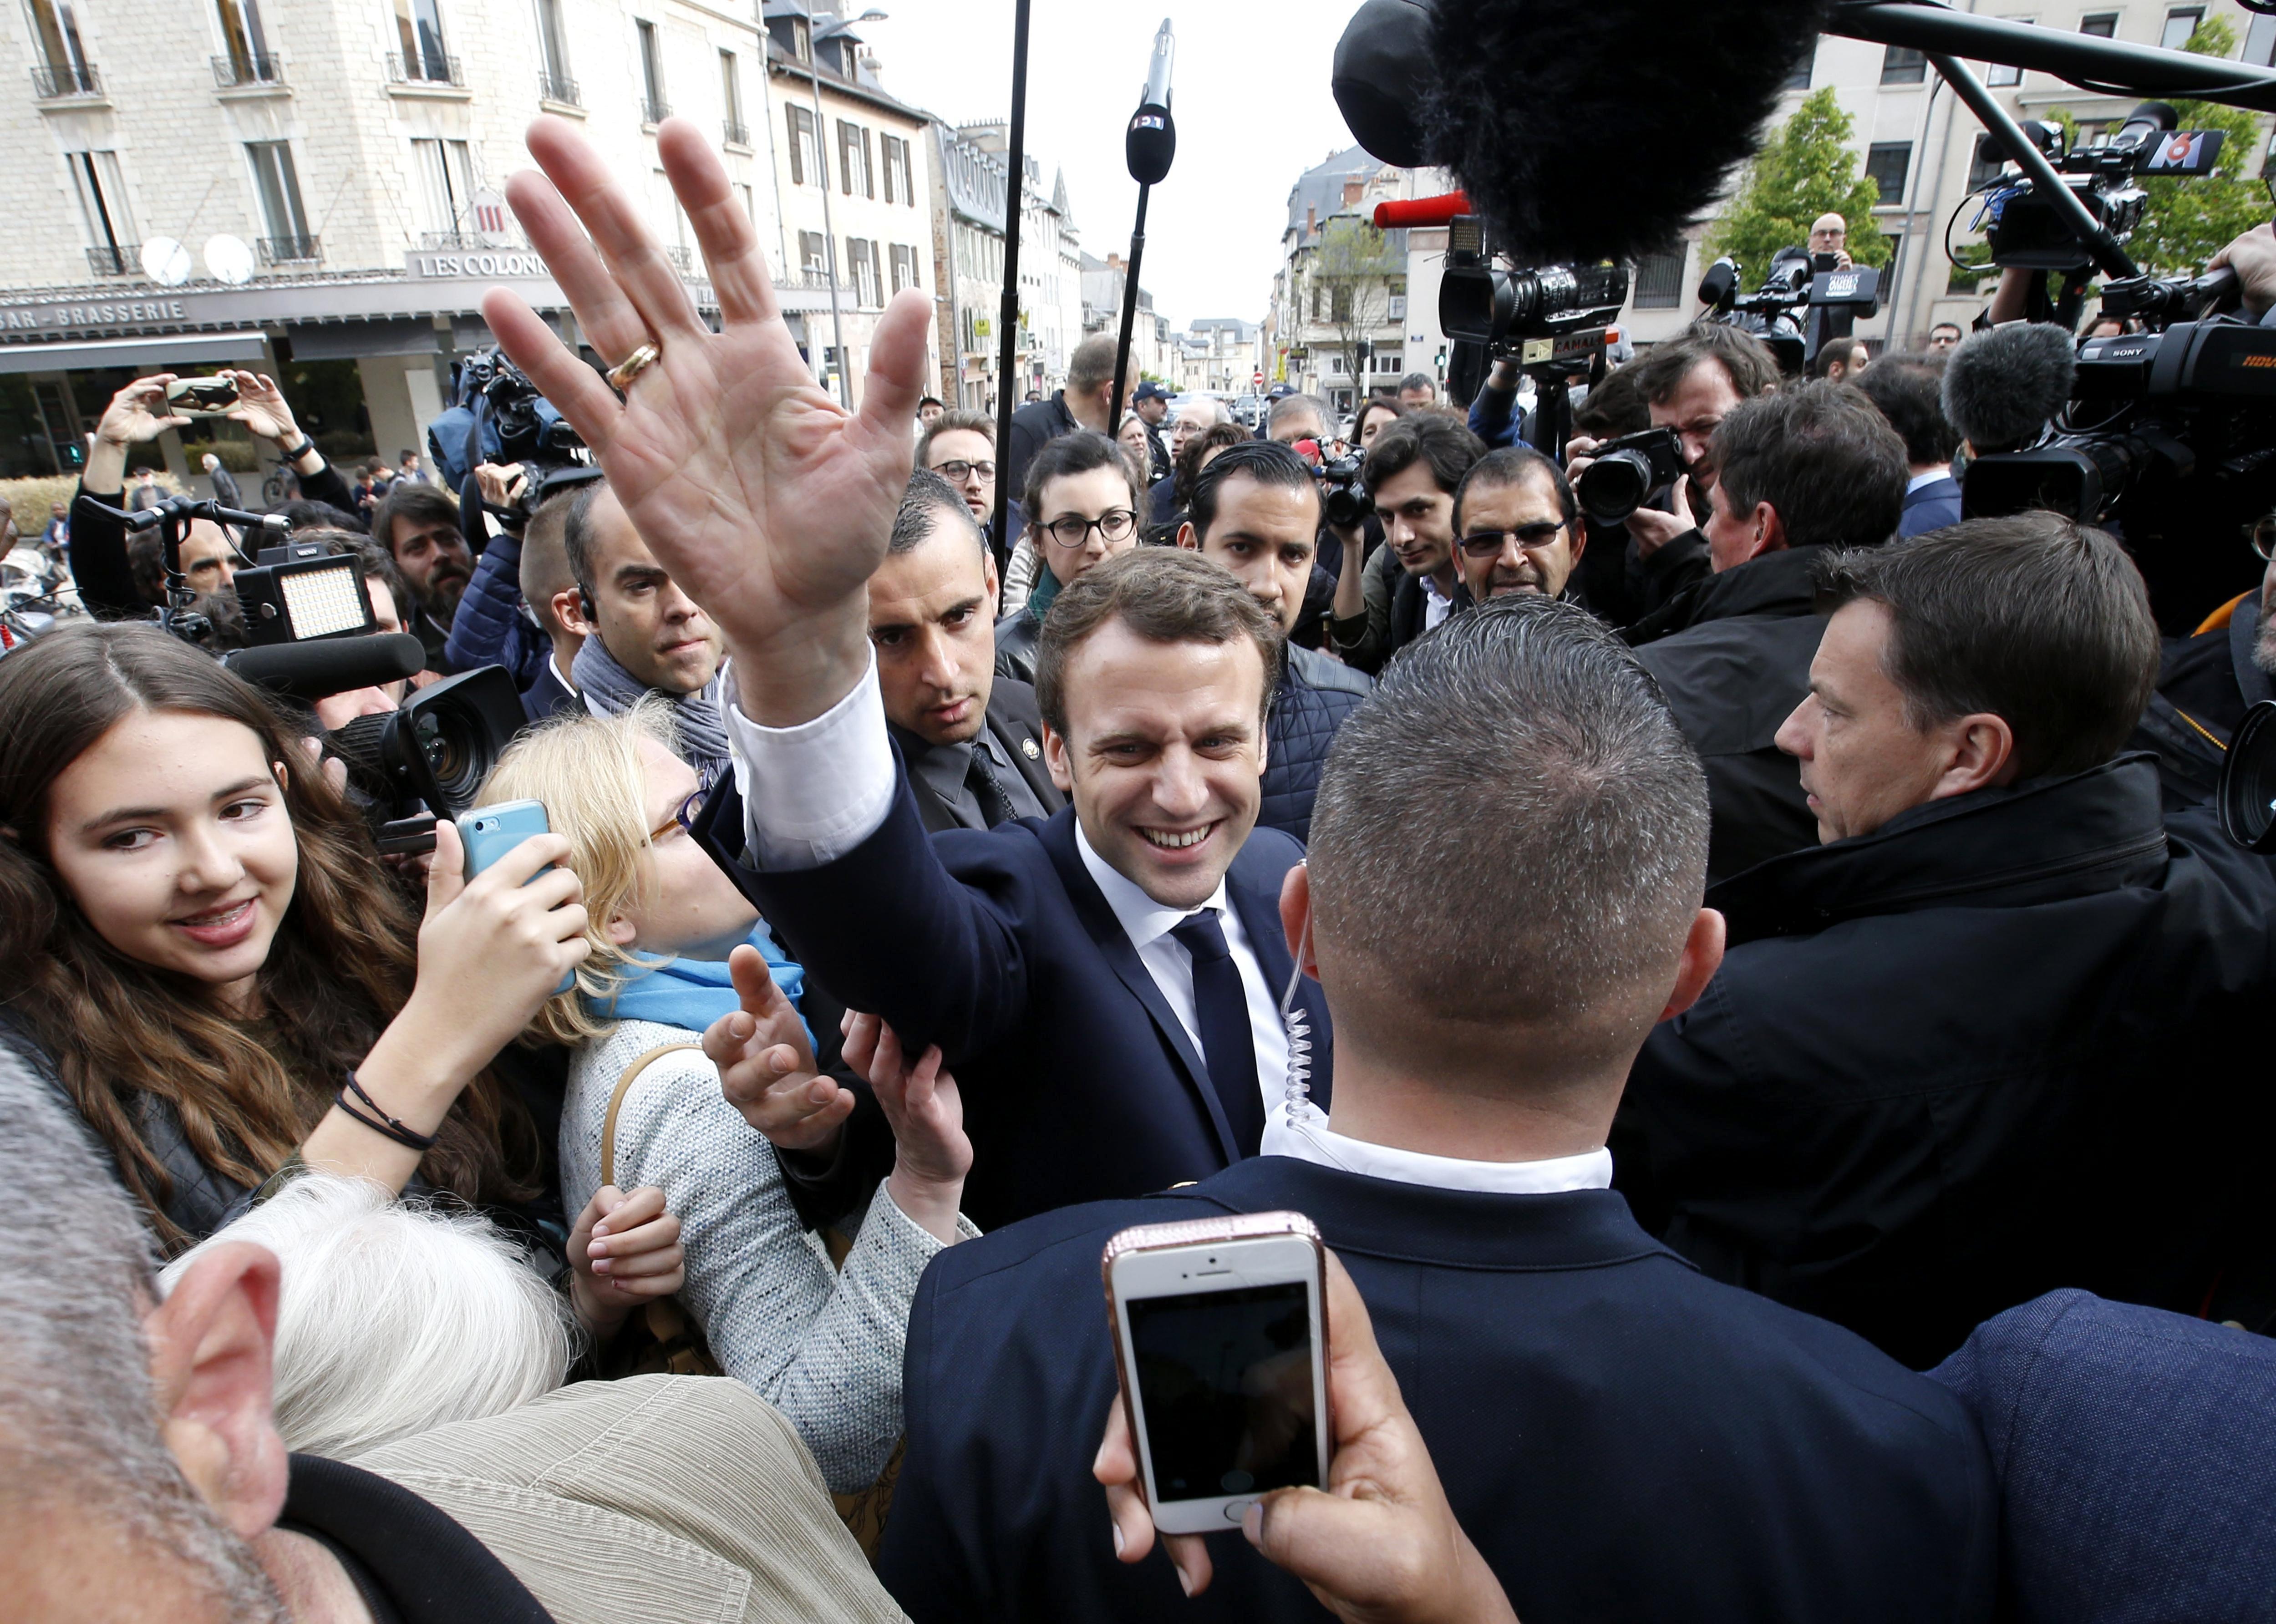 Les últimes enquestes amplien l'avantatge de Macron sobre Le Pen